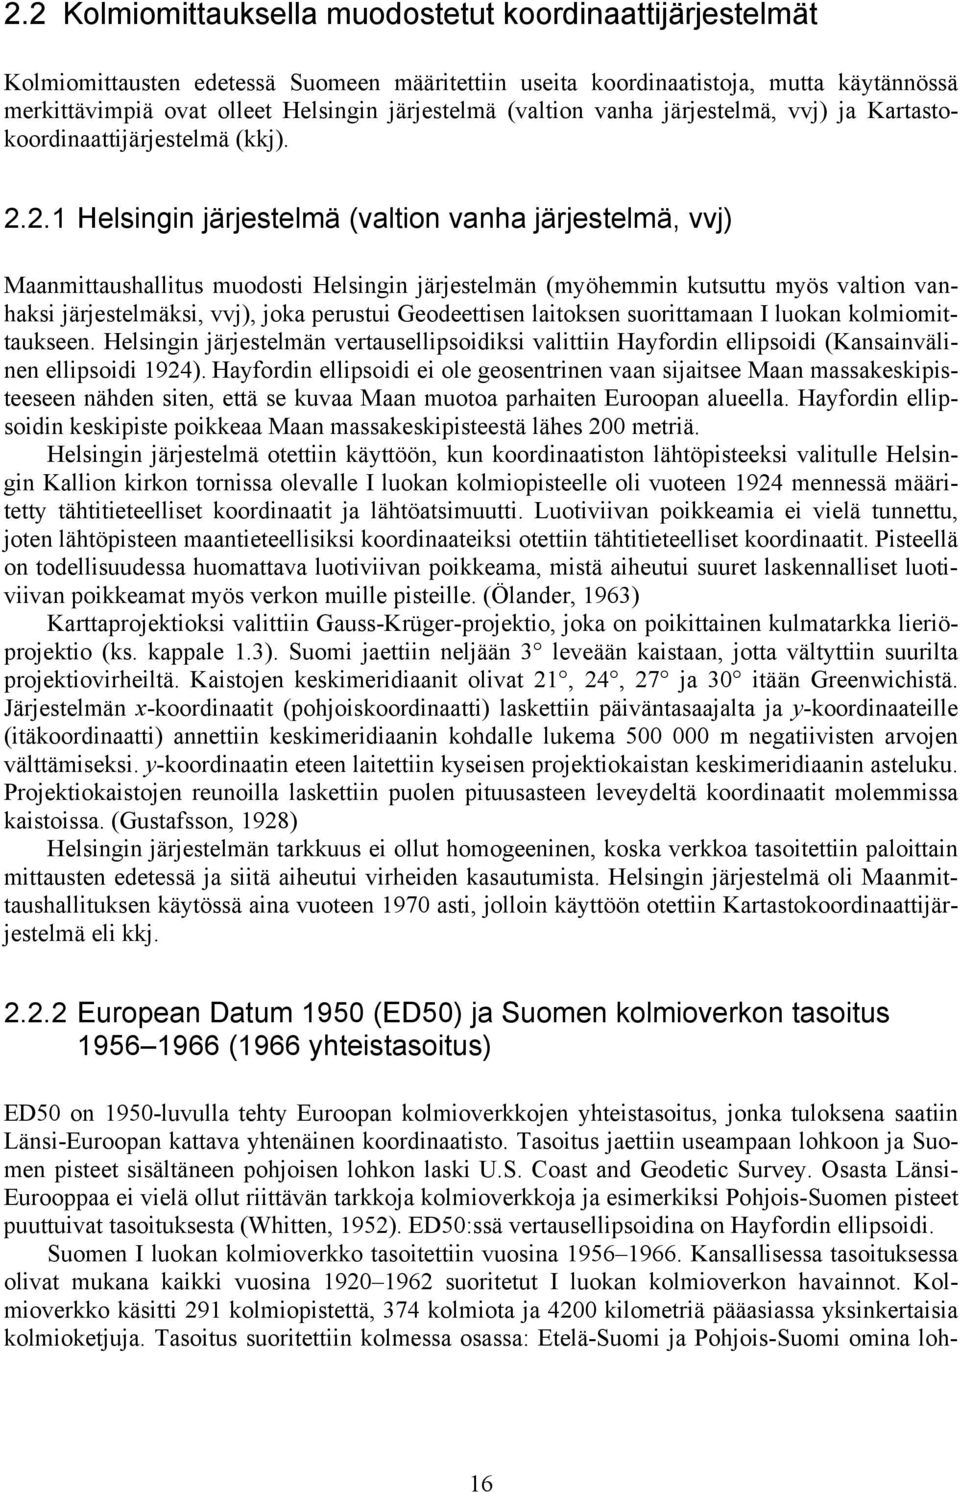 .. Helsingin järjestelmä (vltion vnh järjestelmä, vvj) Mnmittushllitus muodosti Helsingin järjestelmän (möhemmin kutsuttu mös vltion vnhksi järjestelmäksi, vvj), jok perustui Geodeettisen litoksen